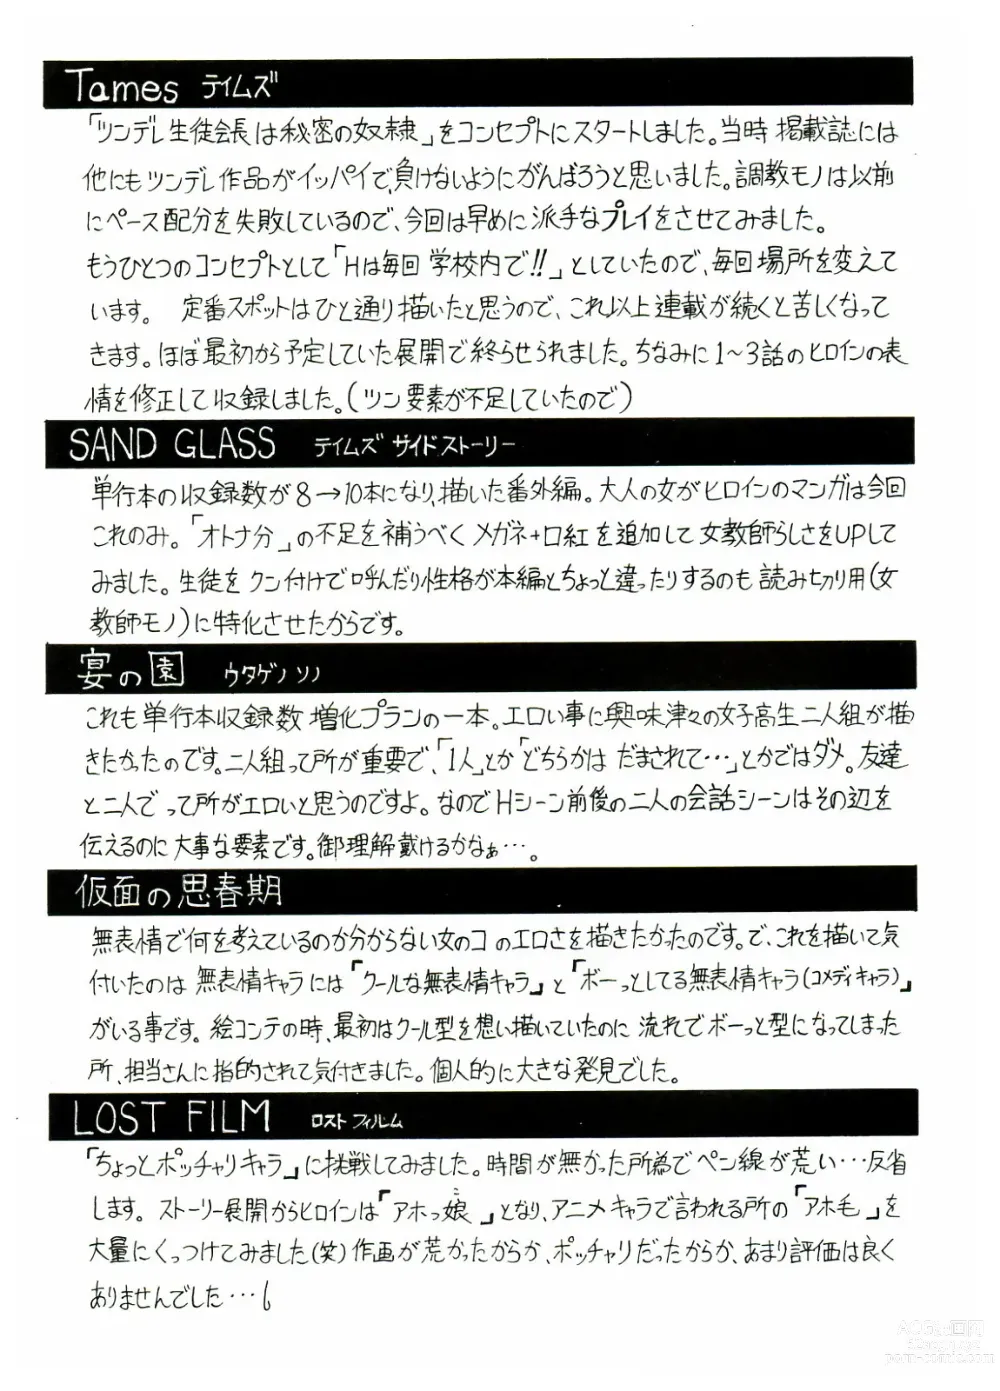 Page 215 of manga Tames